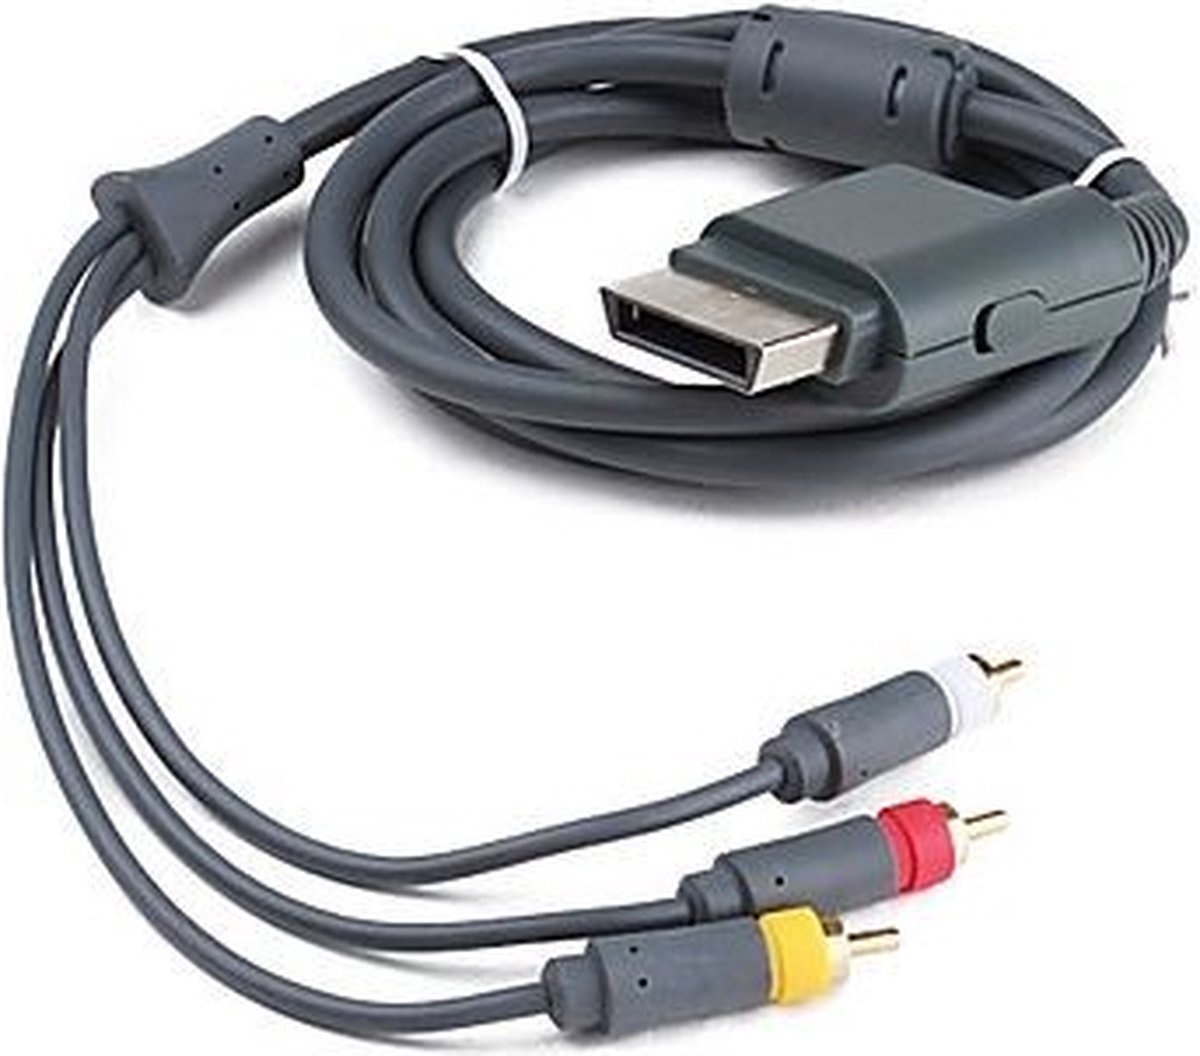 Composiet AV kabel voor XBOX 360 - 1,5 meter